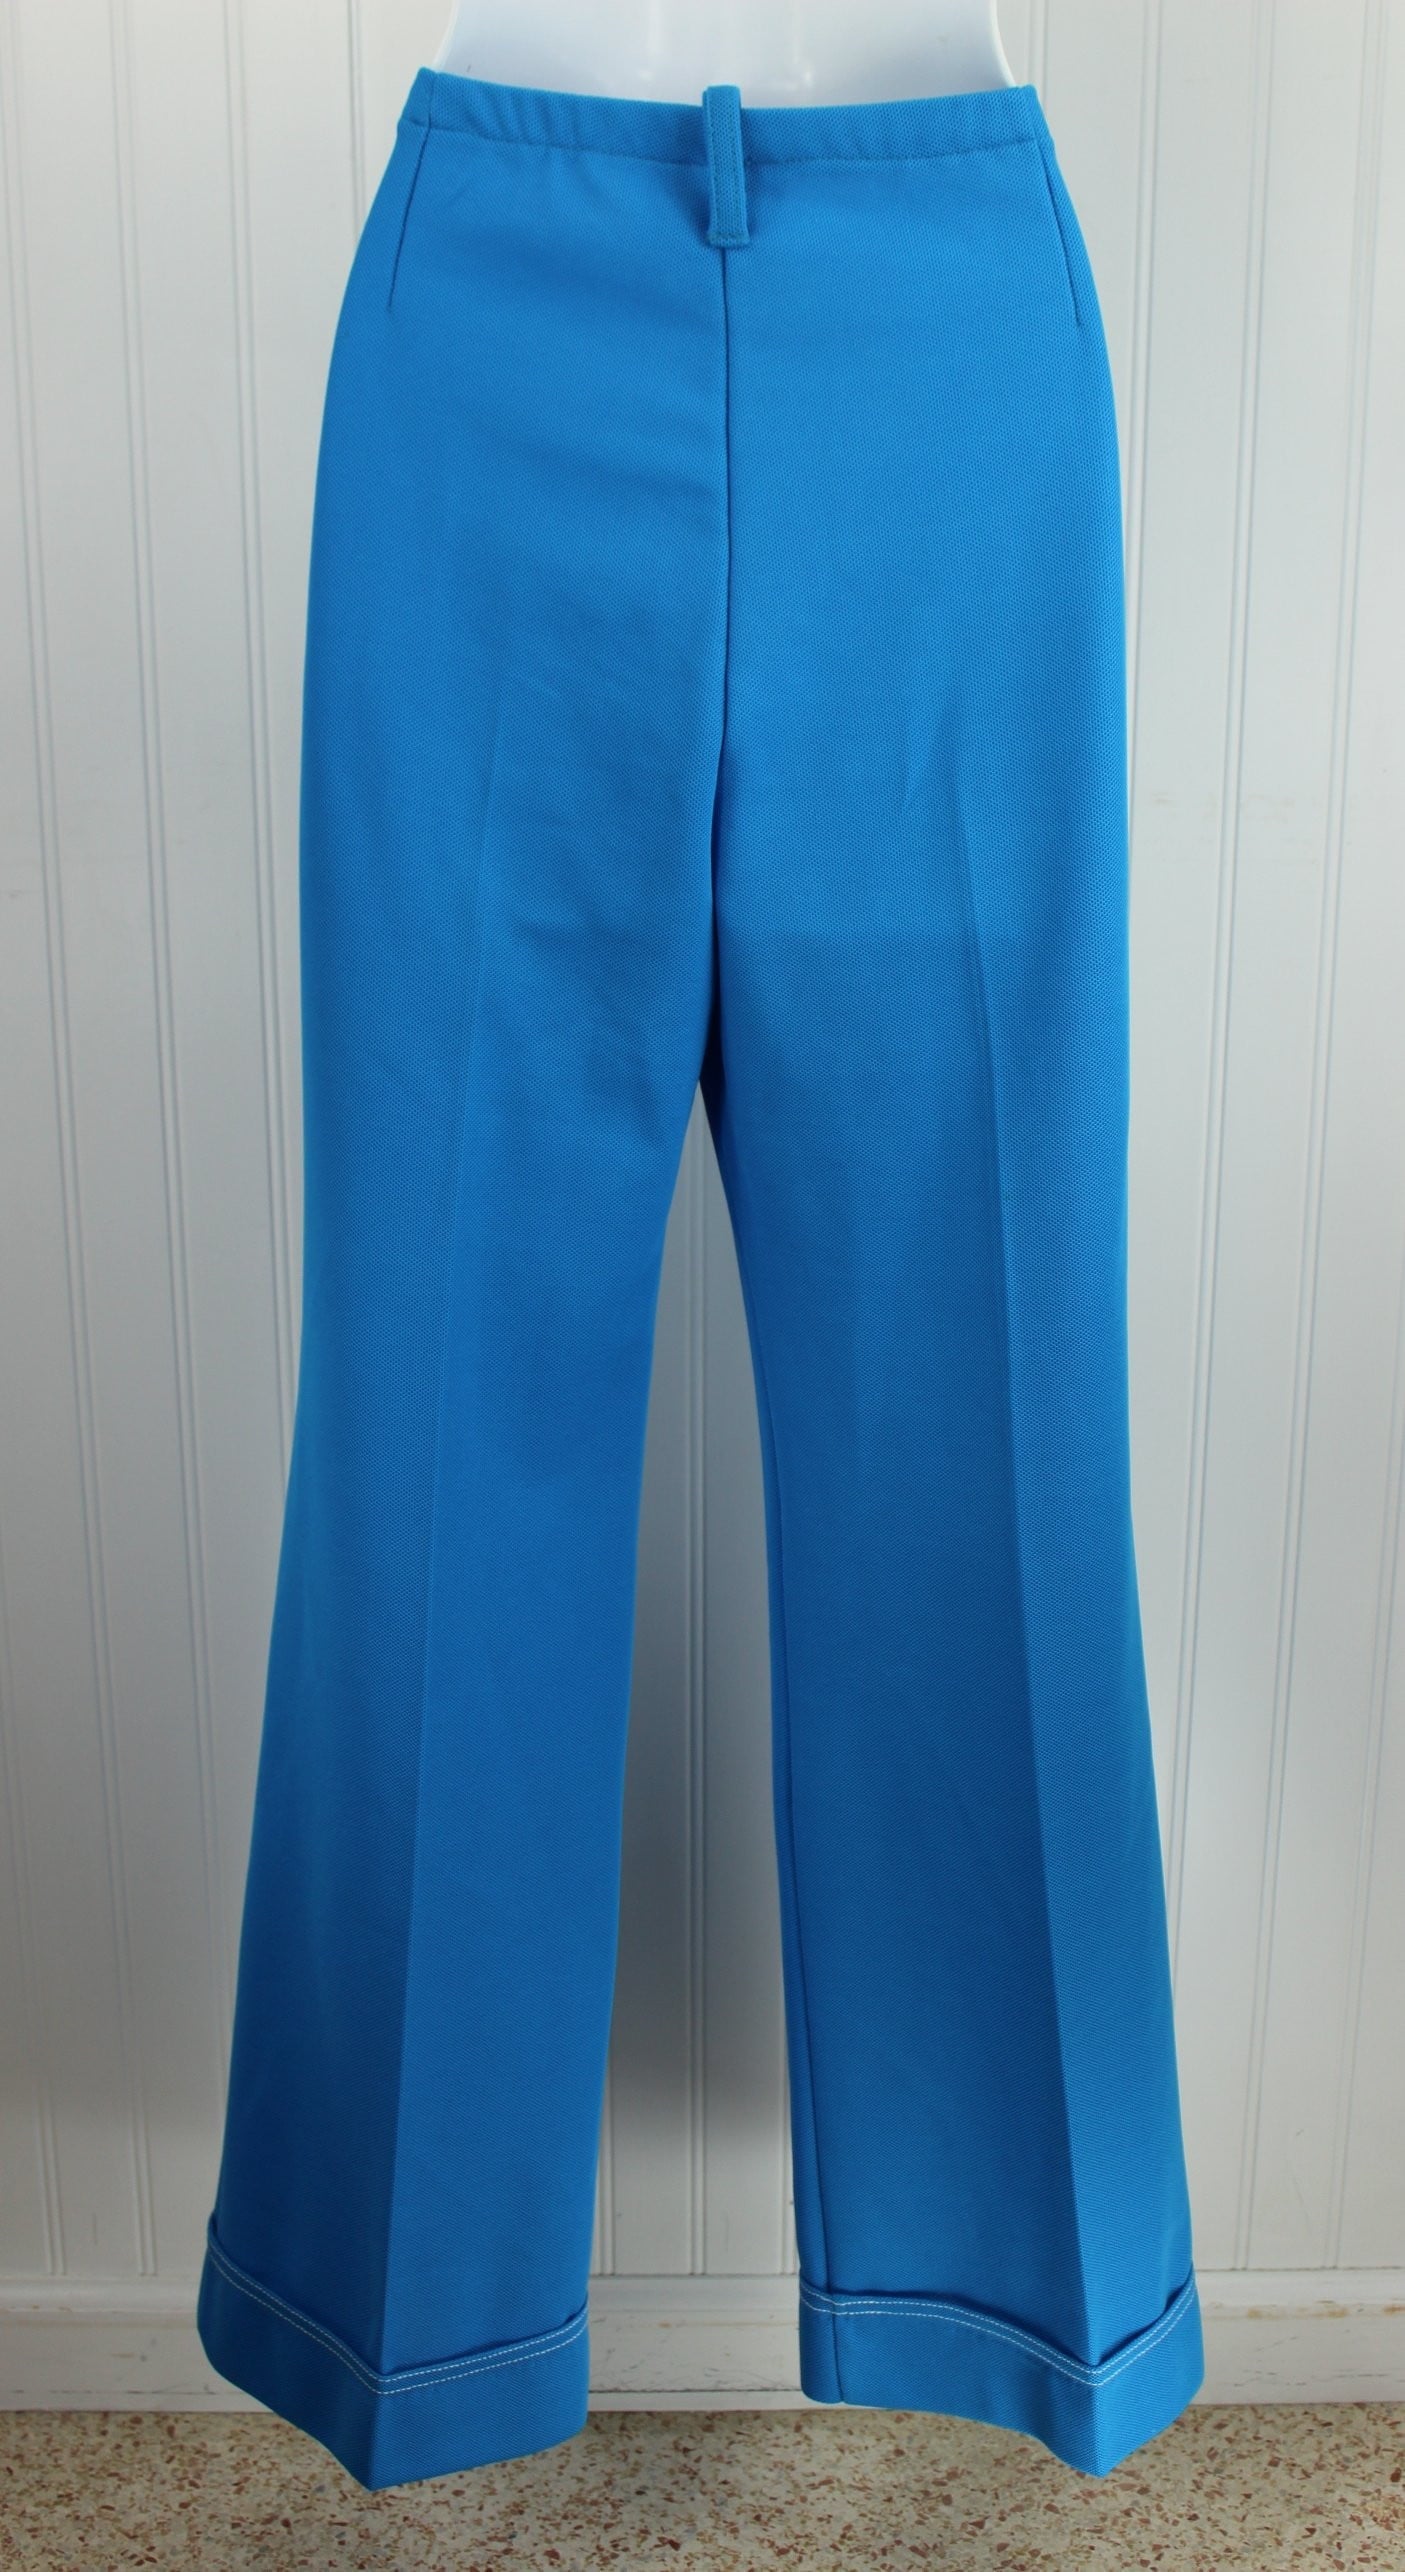 Vintage Jantzen Nautical Pants Suit 1960s - Button Tab Flare Pants - Long Sleeve Jacket theater costume